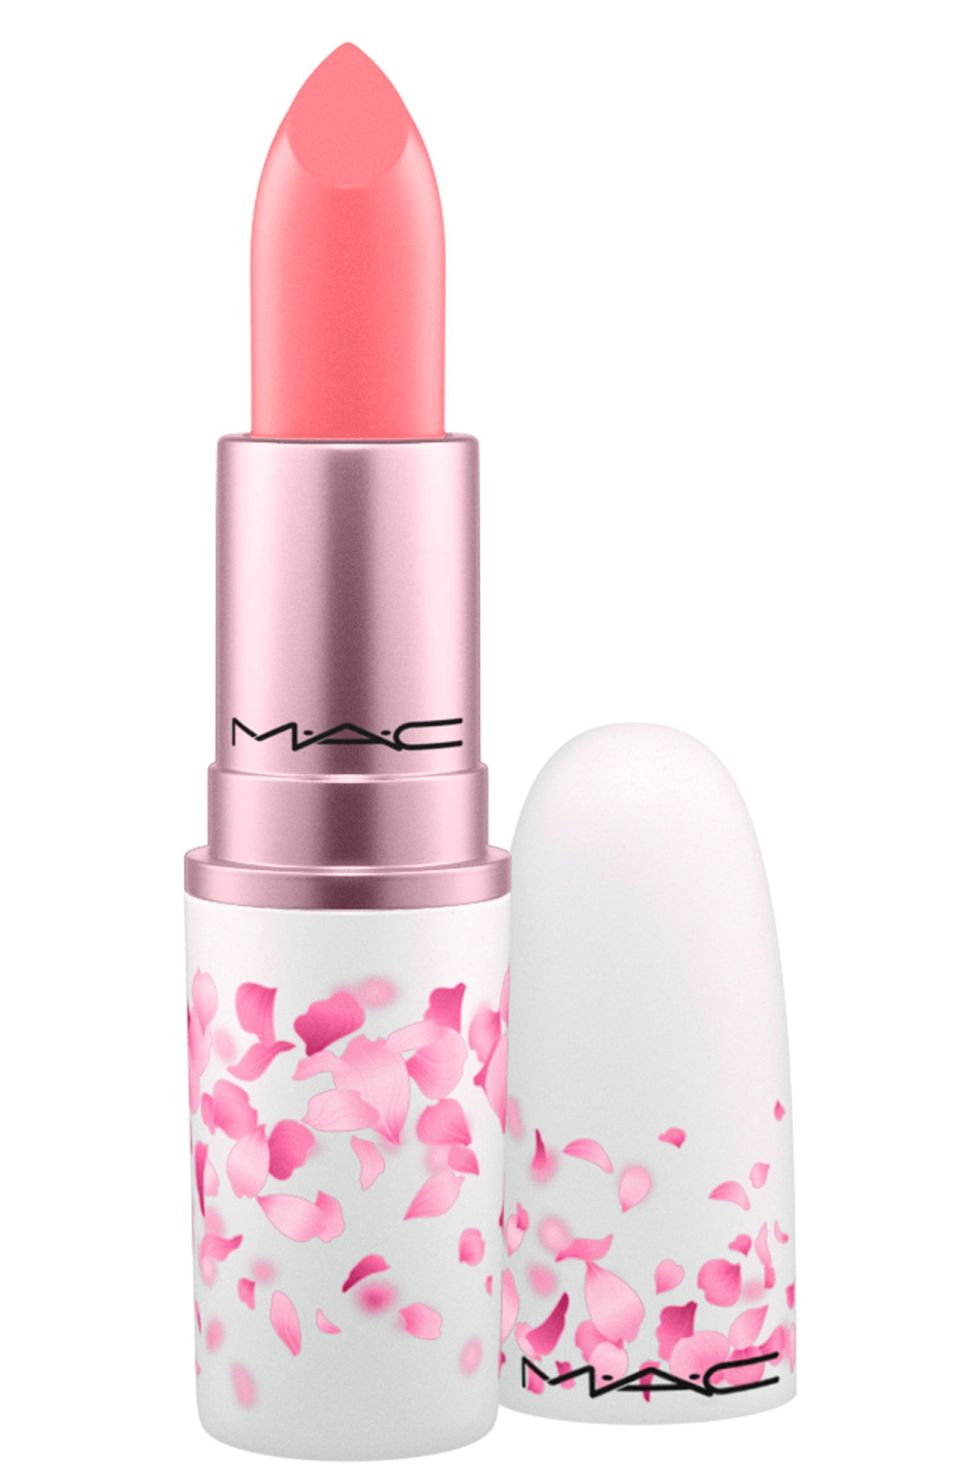 M.A.C Boom, Boom, Bloom Lipstick in Hi-Fructease